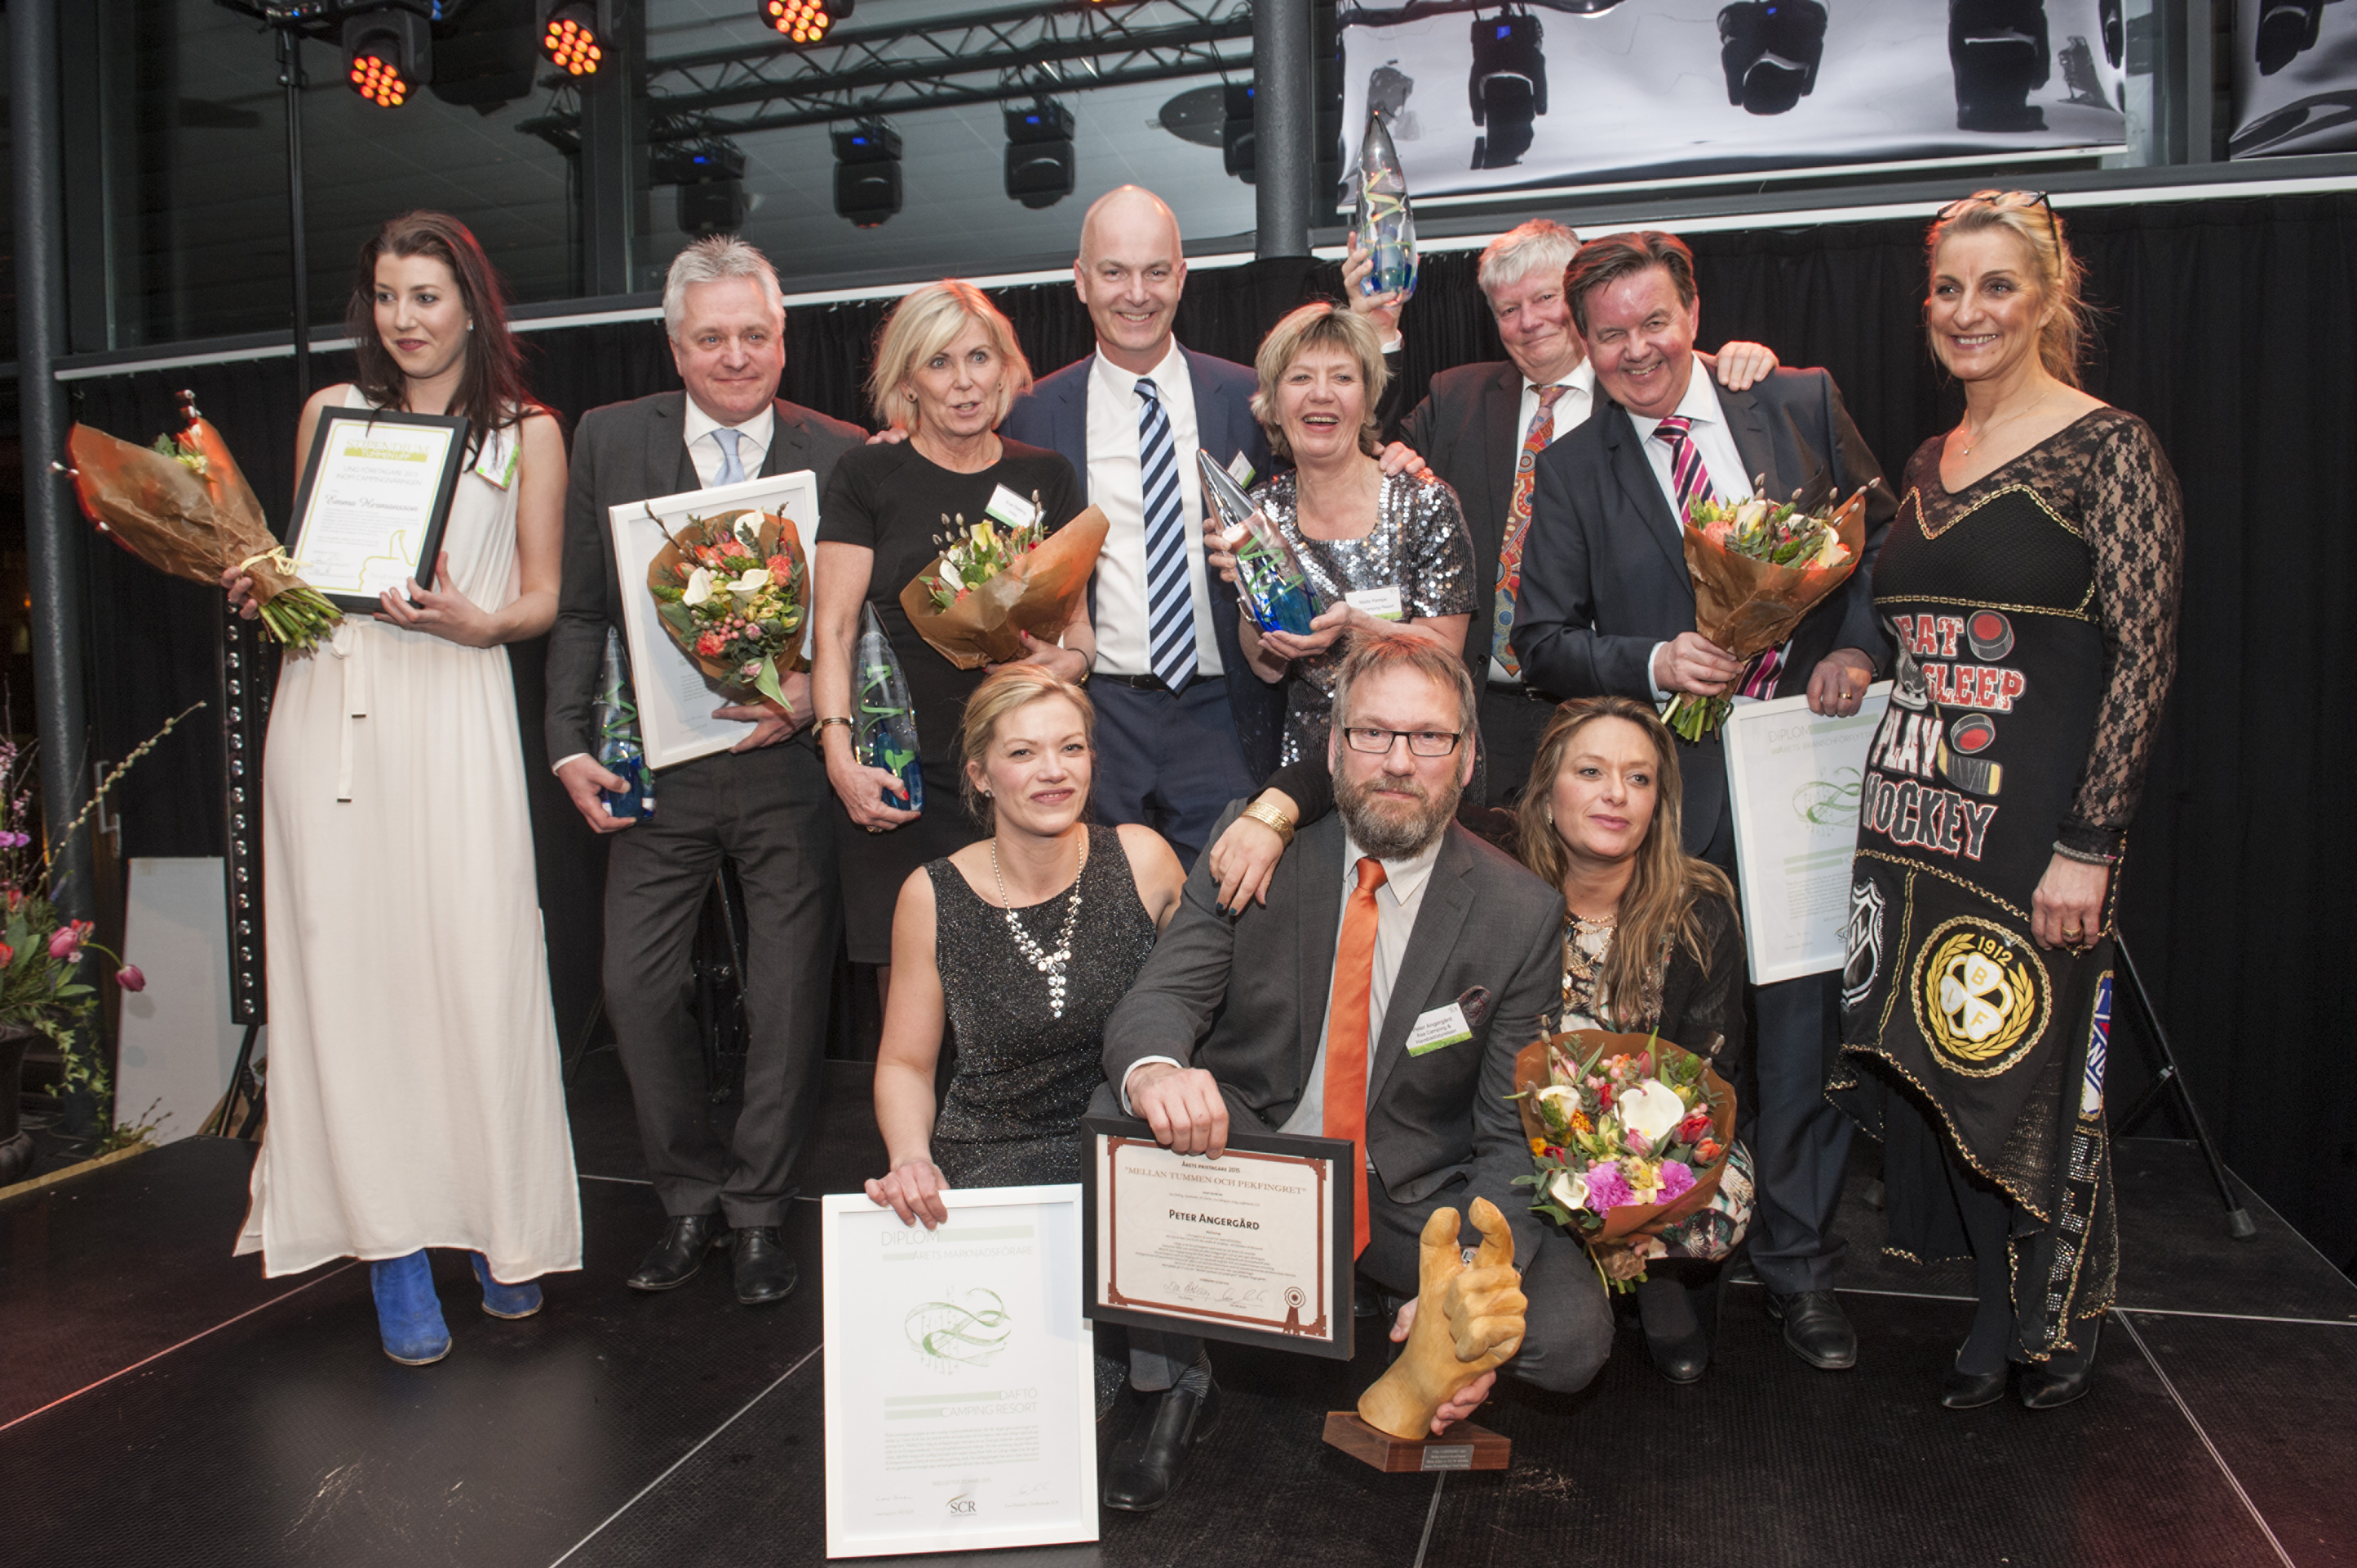 Alla prisvinnare 2015/Fotograf: Erland Segerstedt